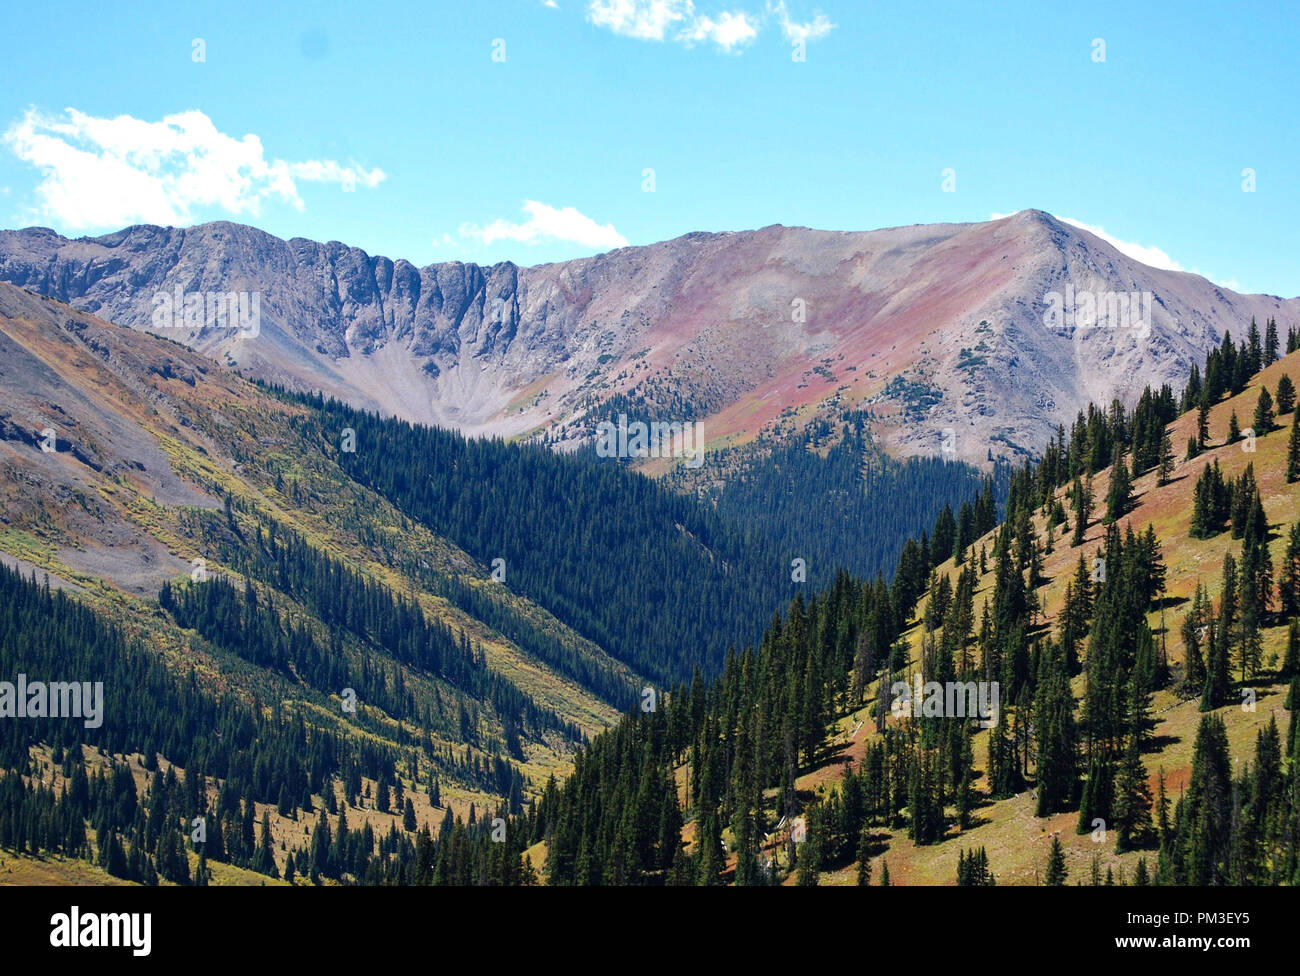 Longs Peak viewed from Estes Park, Colorado Stock Photo